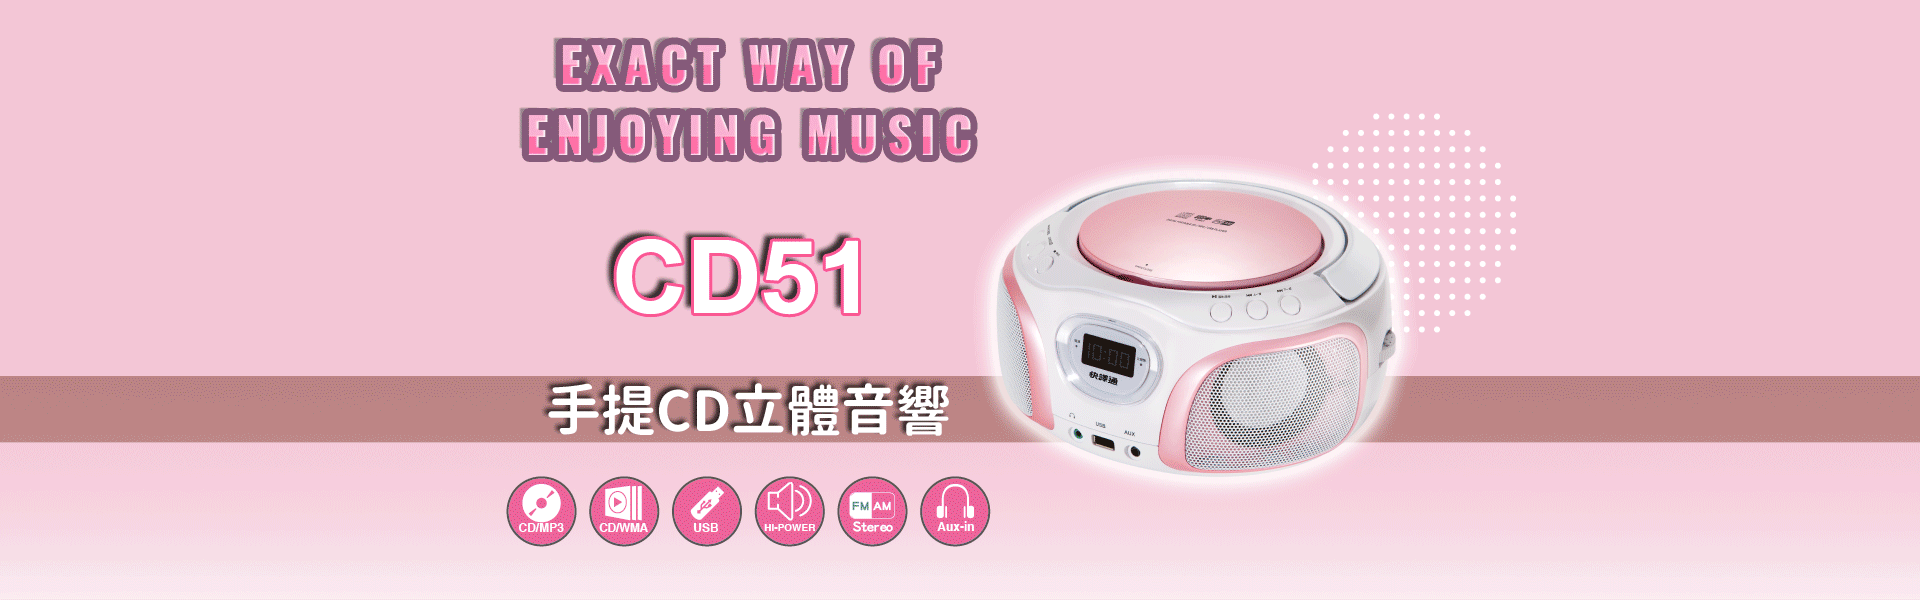 cd51手提cd音響